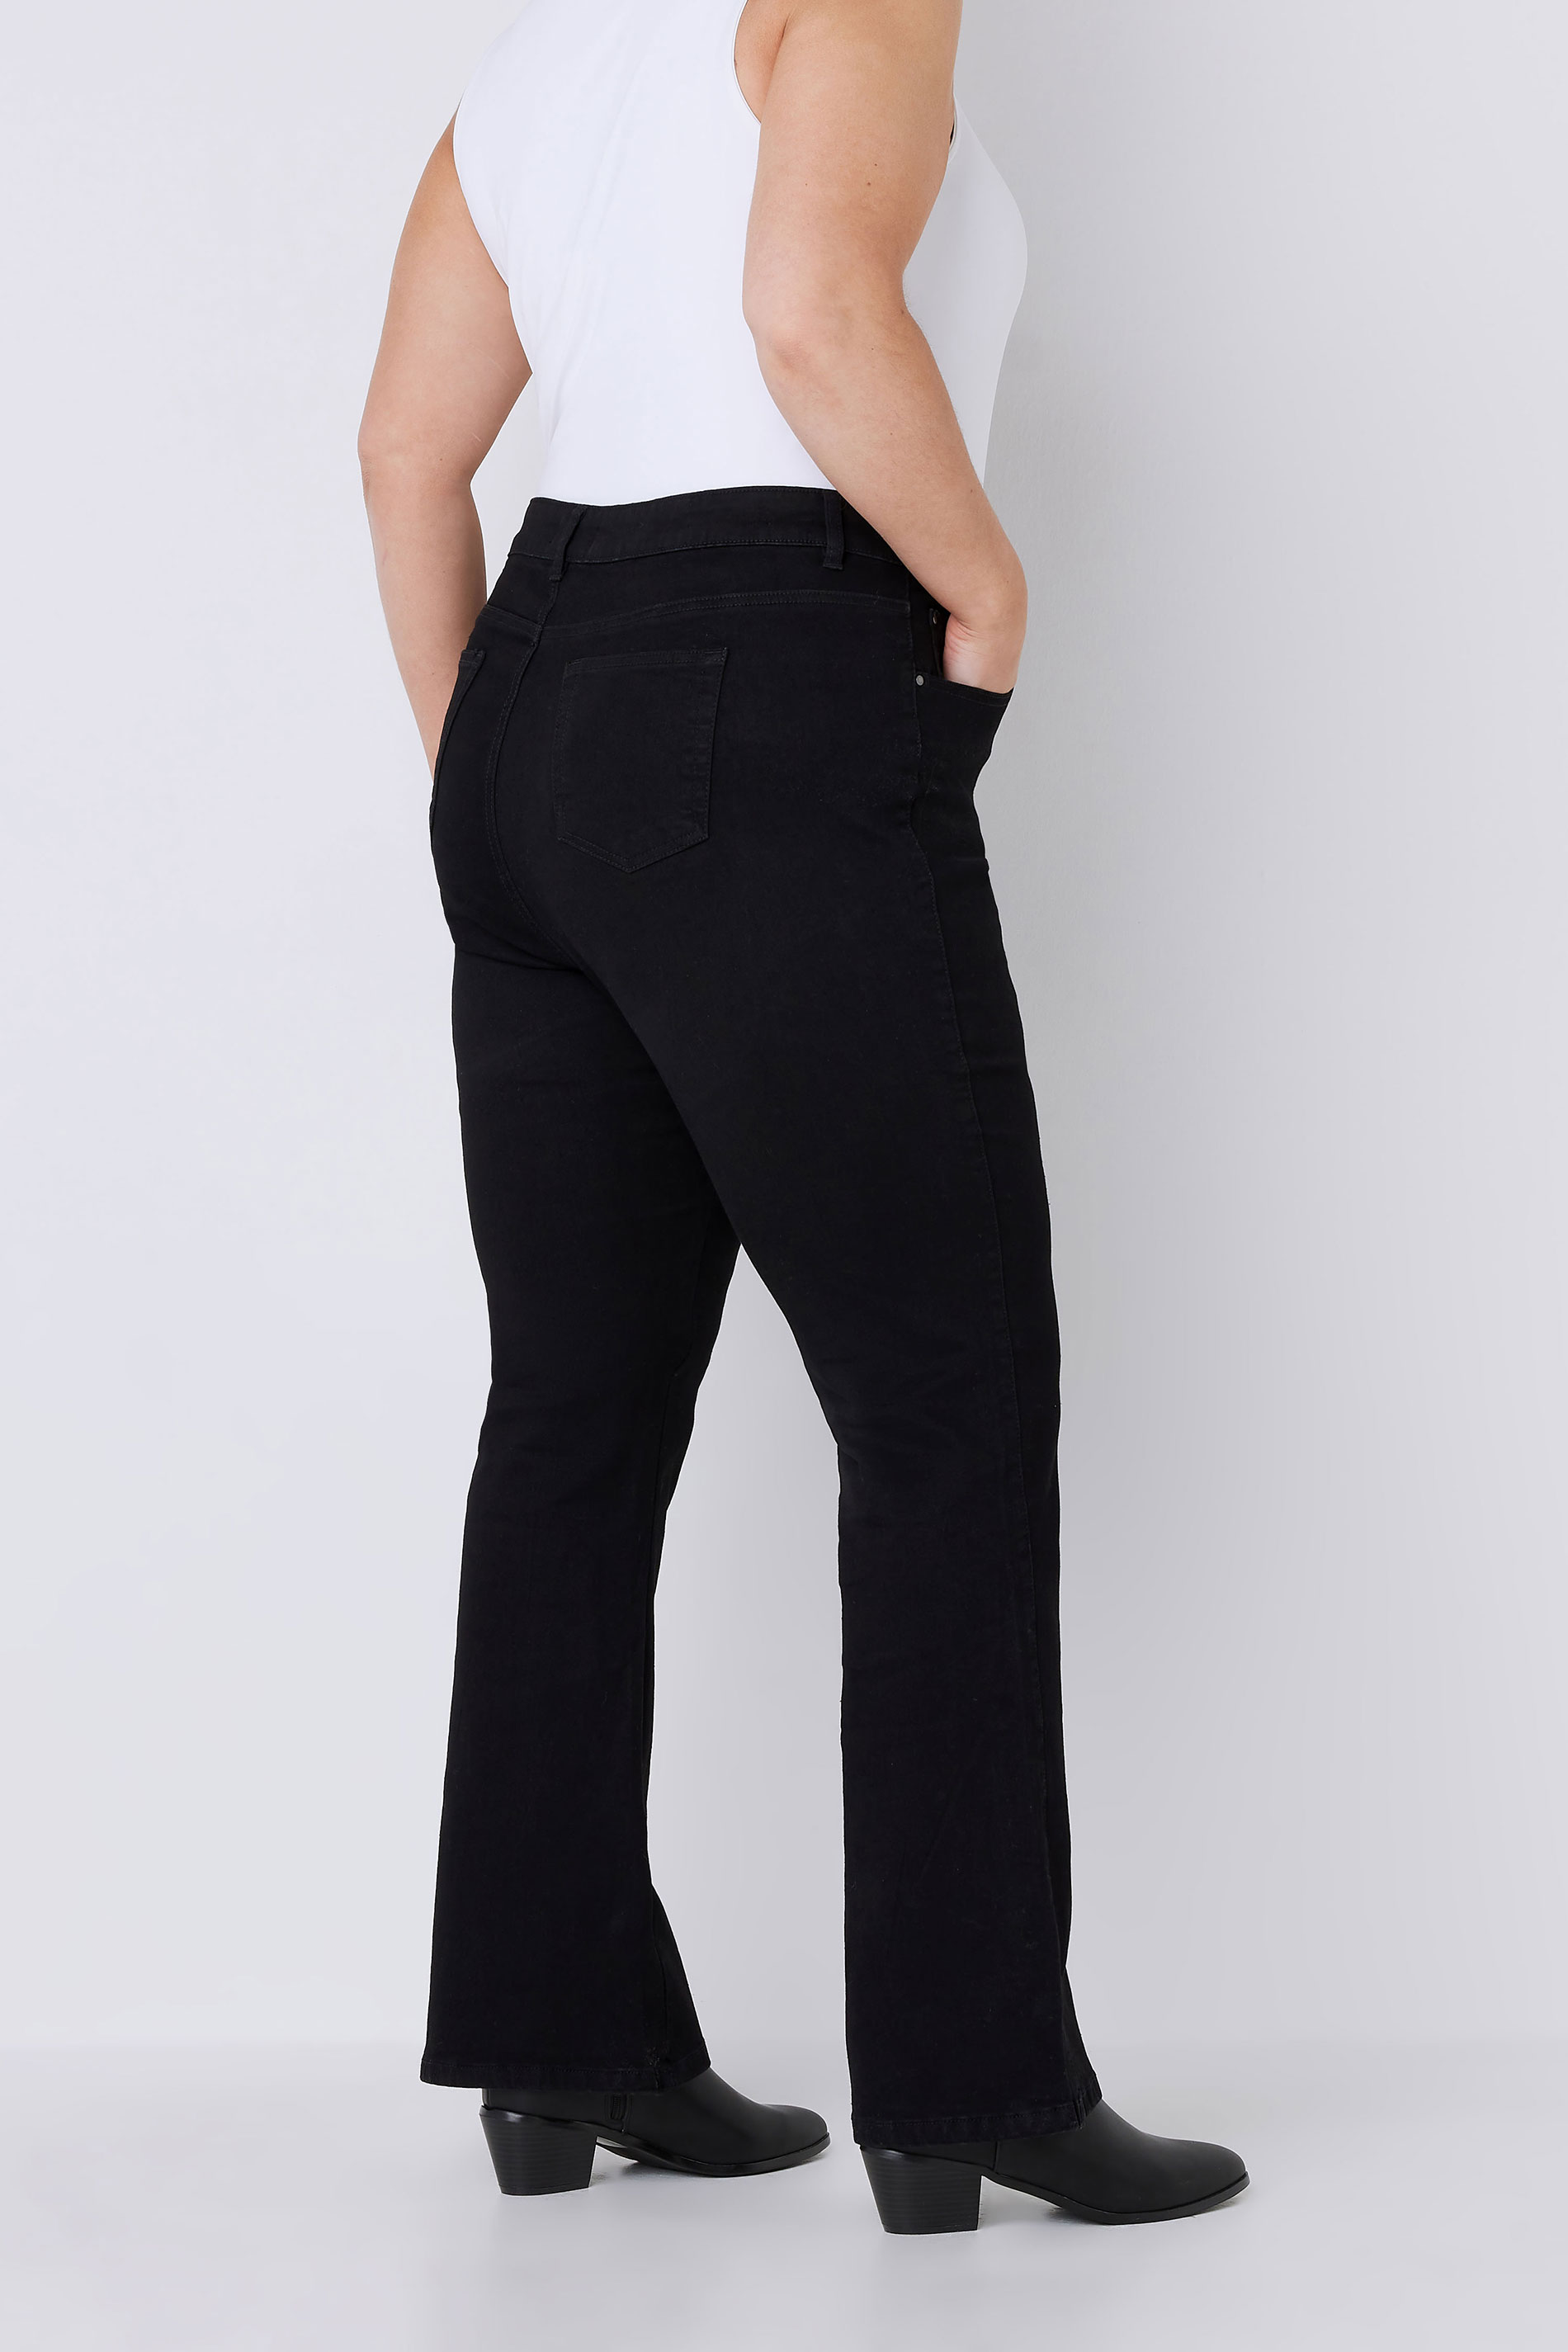 EVANS Plus Size Black Bootcut Jeans | Evans 3